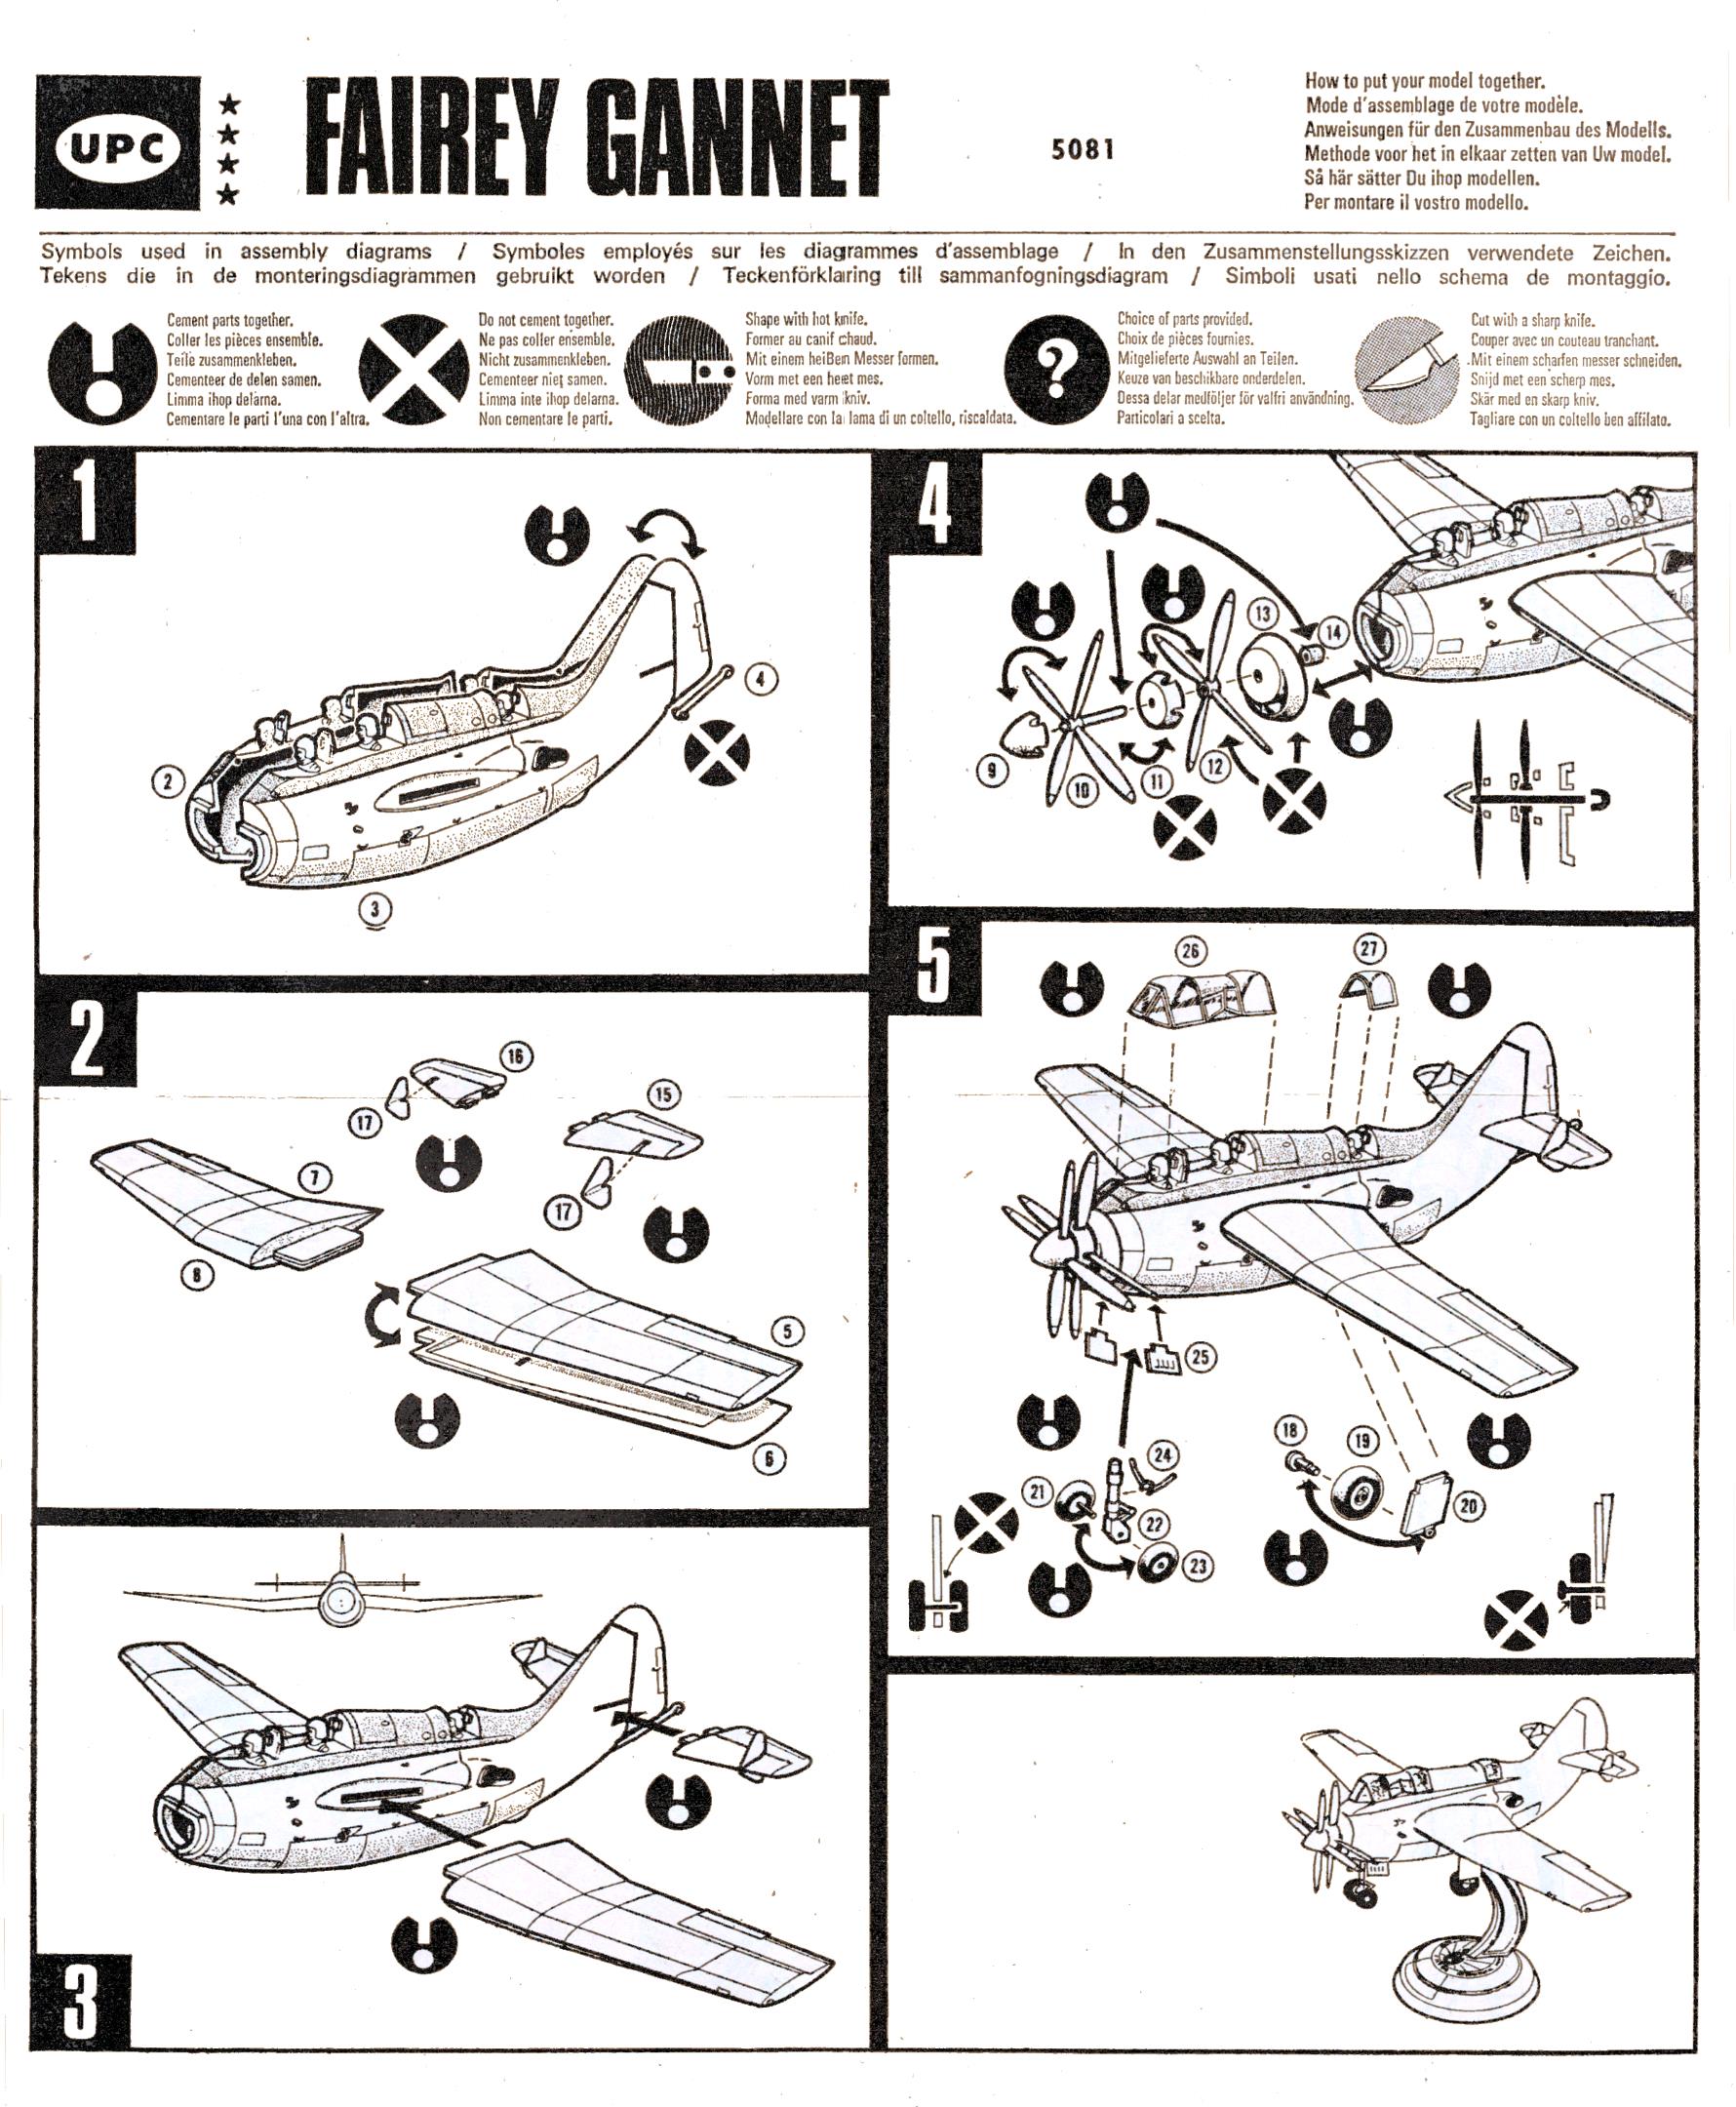 Инструкция UPC 5081 Fairey Gannet